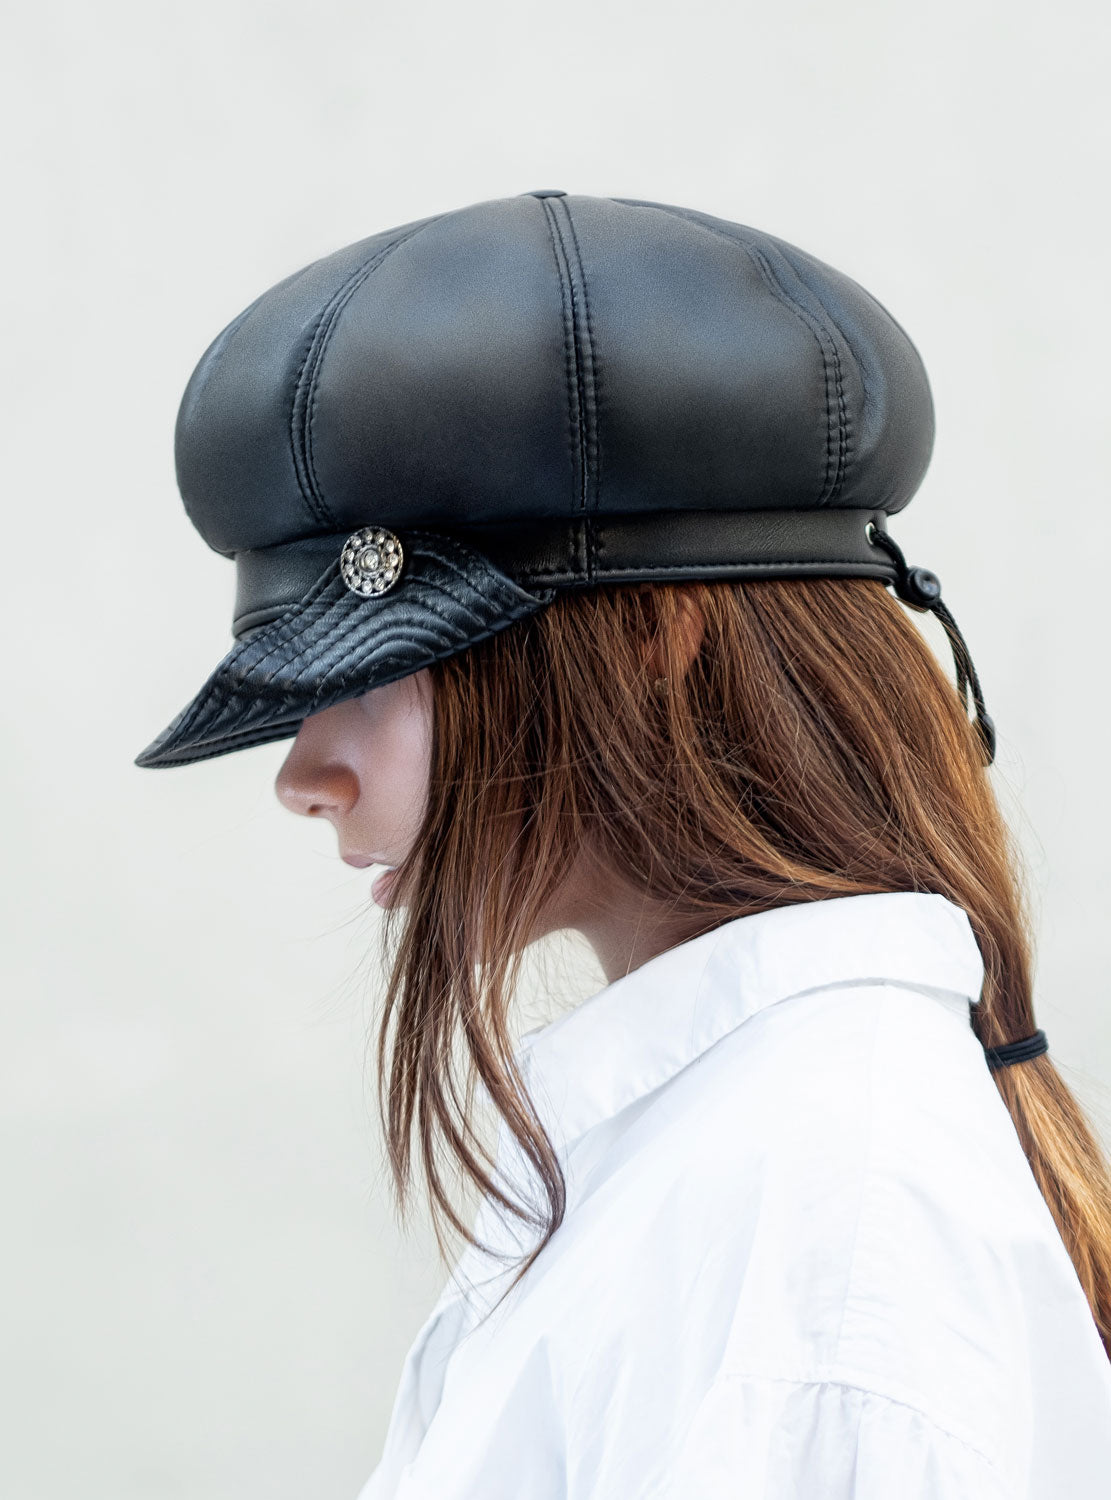 Leather cap with inverted peak